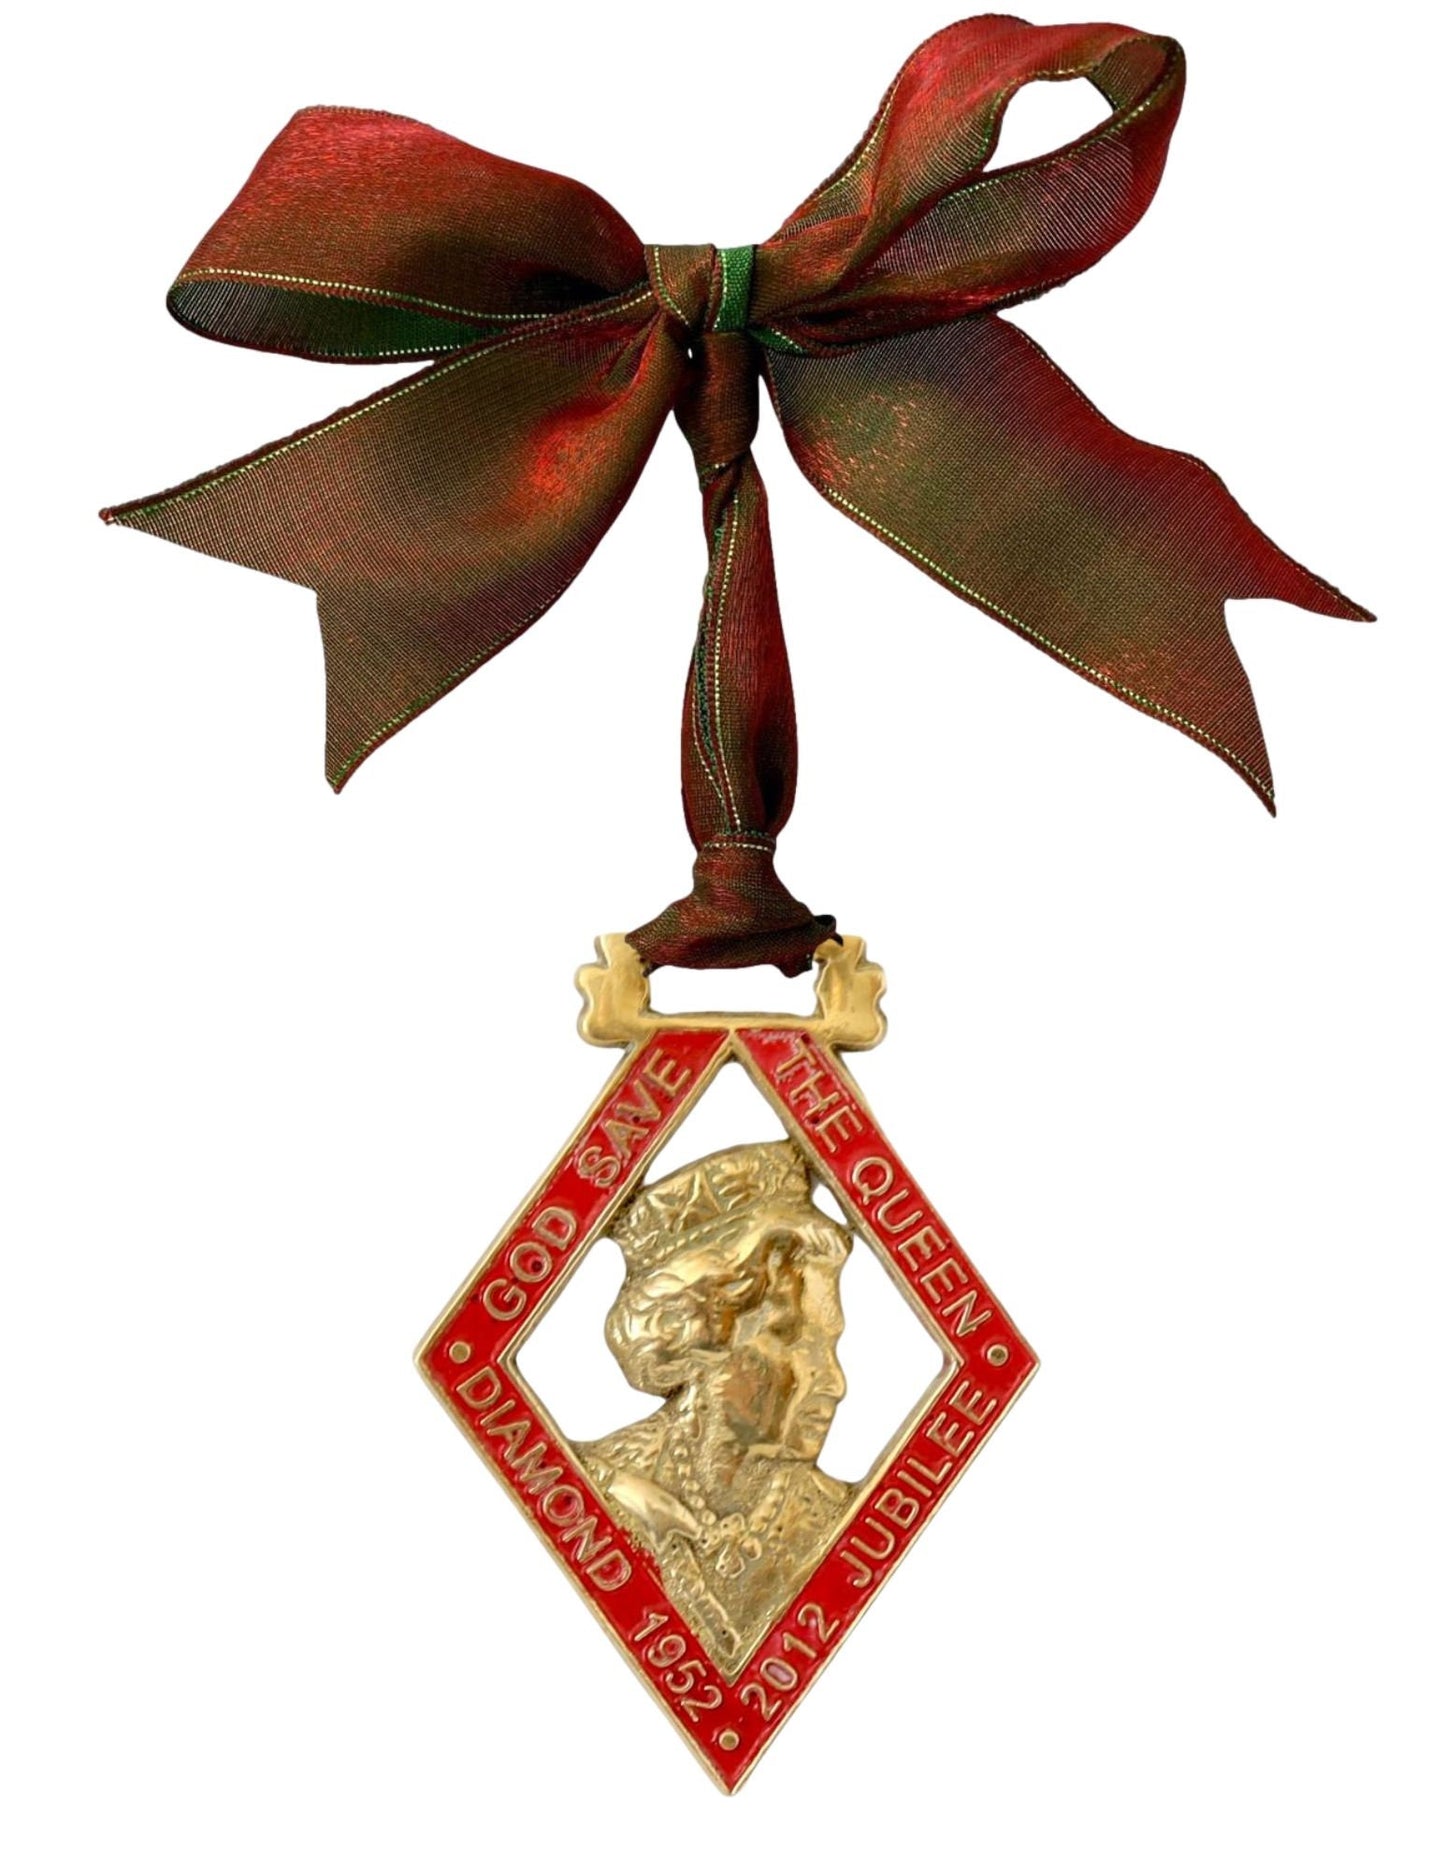 2012 Queen Elizabeth II Diamond Jubilee Horse Brass Ornament